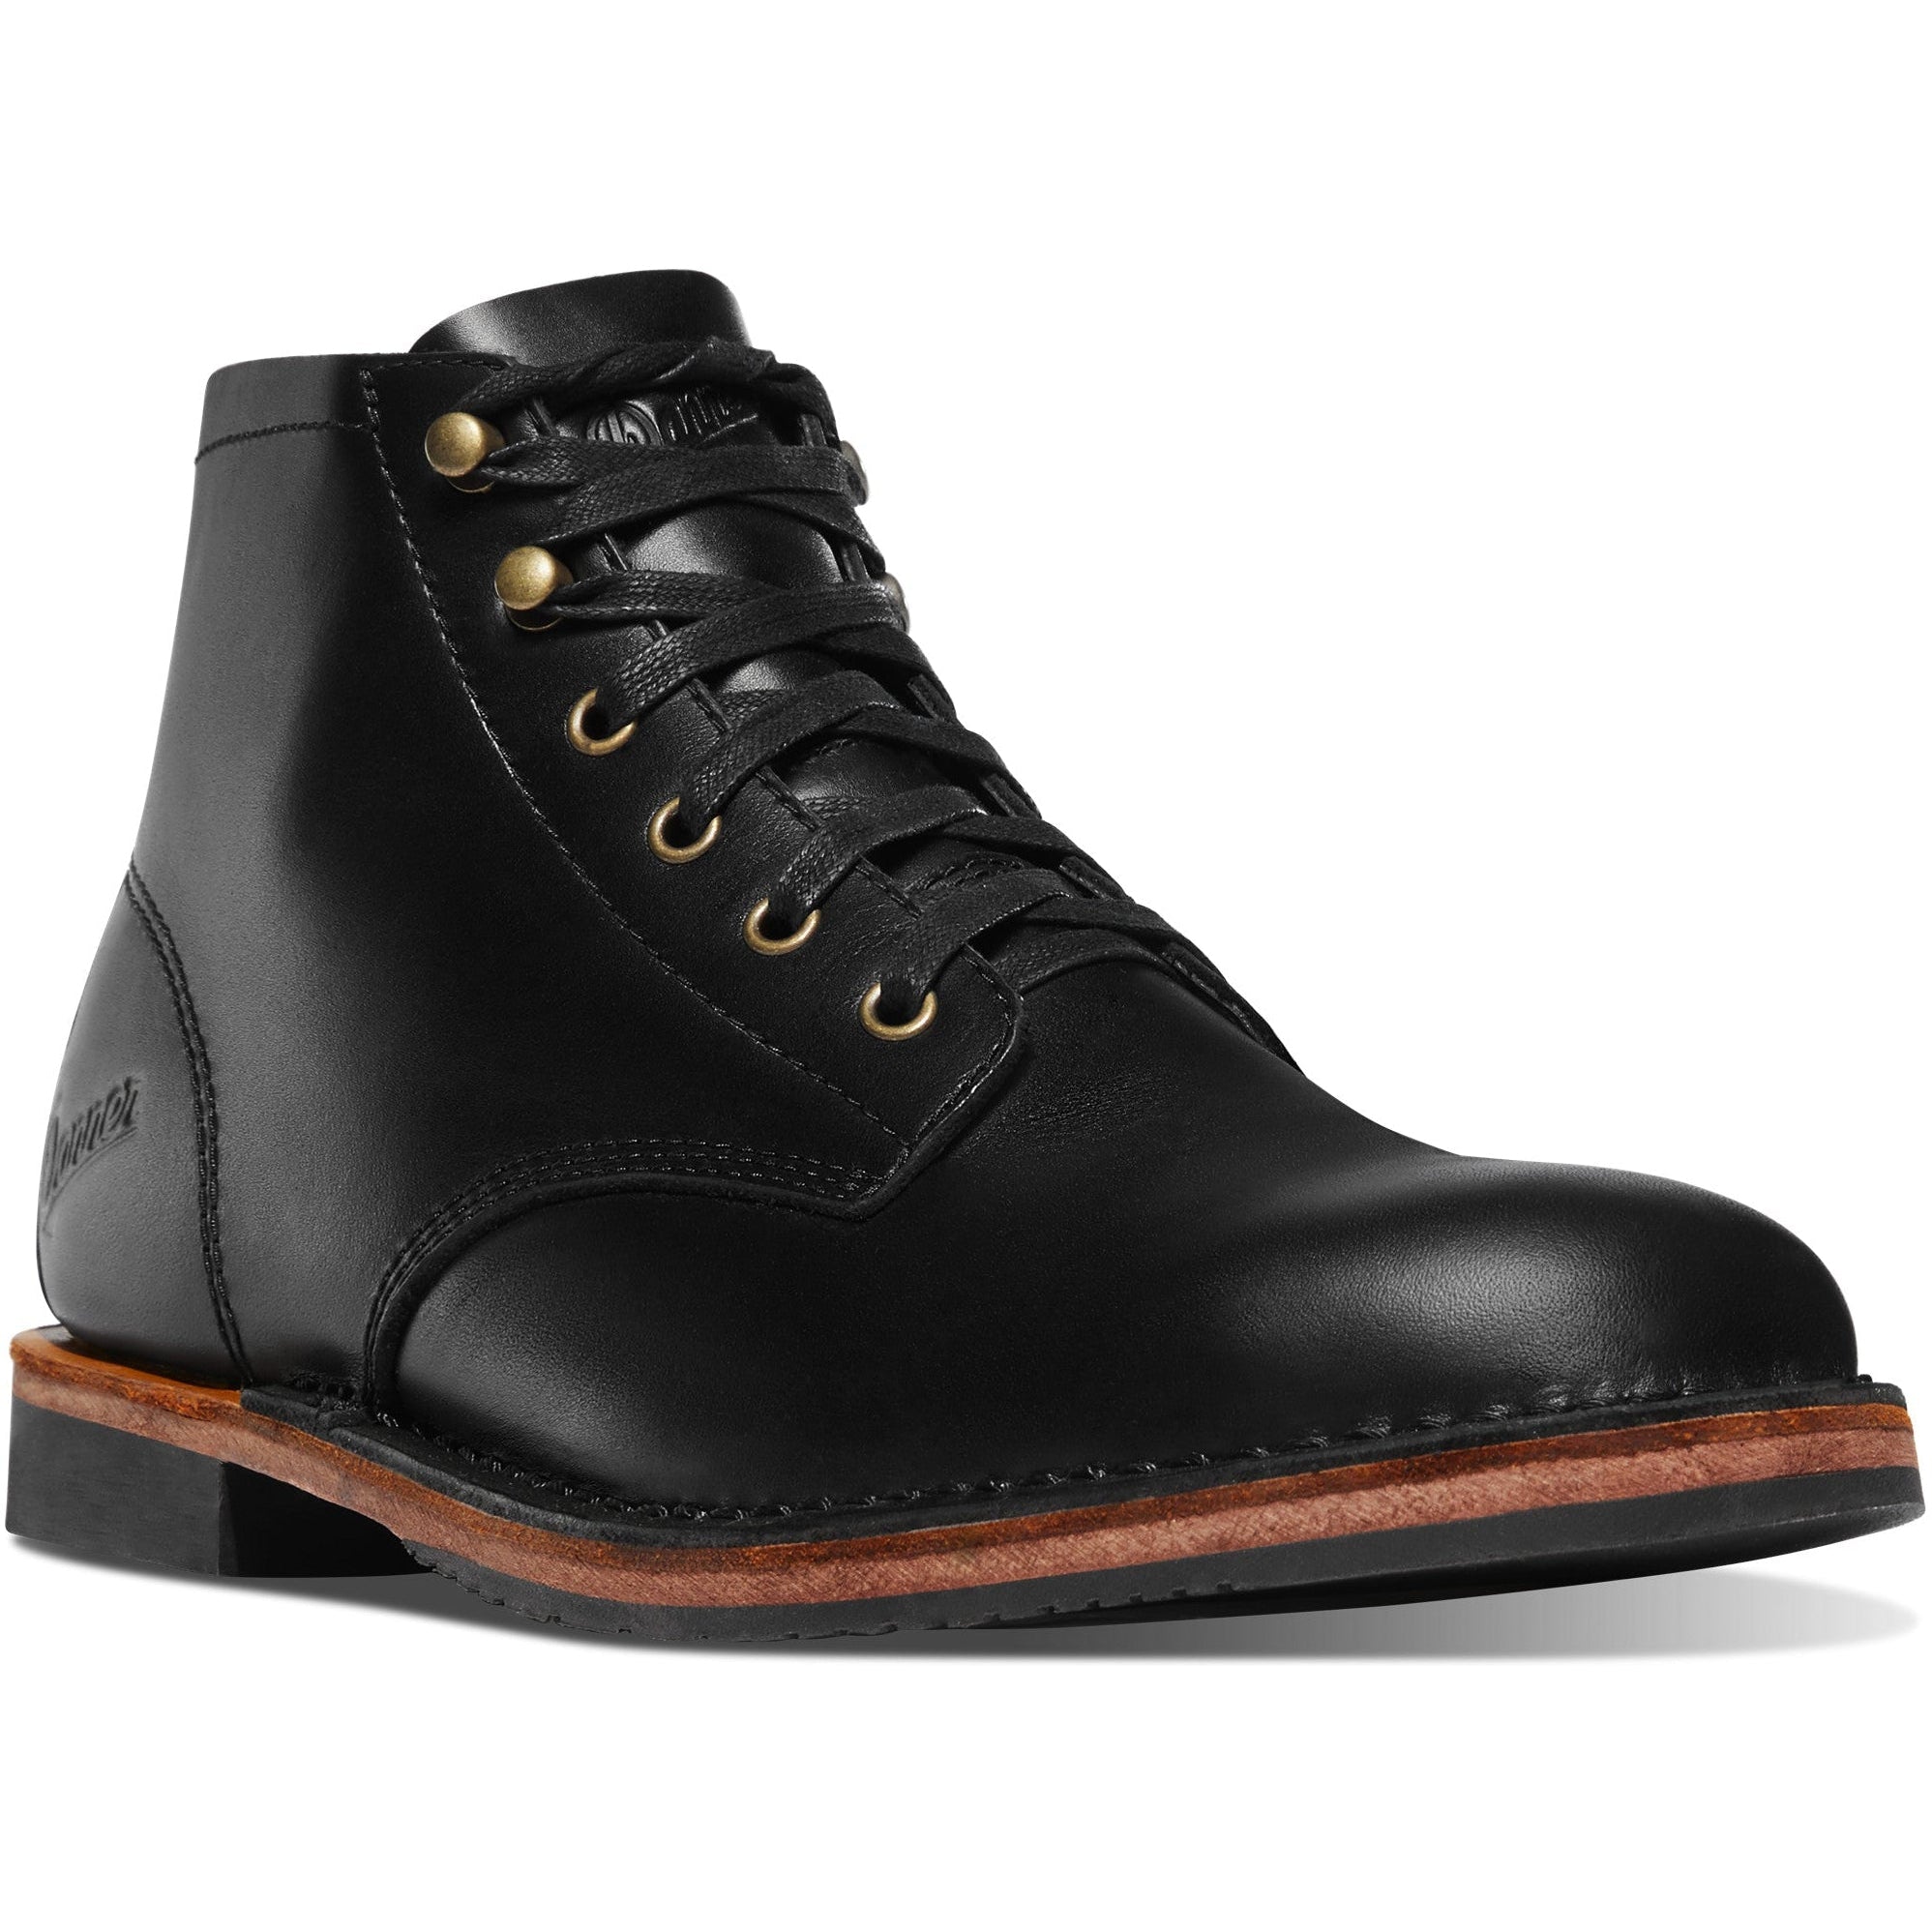 Danner Men's Danner Jack II 4.5" Lifestyle Leather Shoe - Black - 34340 7 / Wide / Black - Overlook Boots